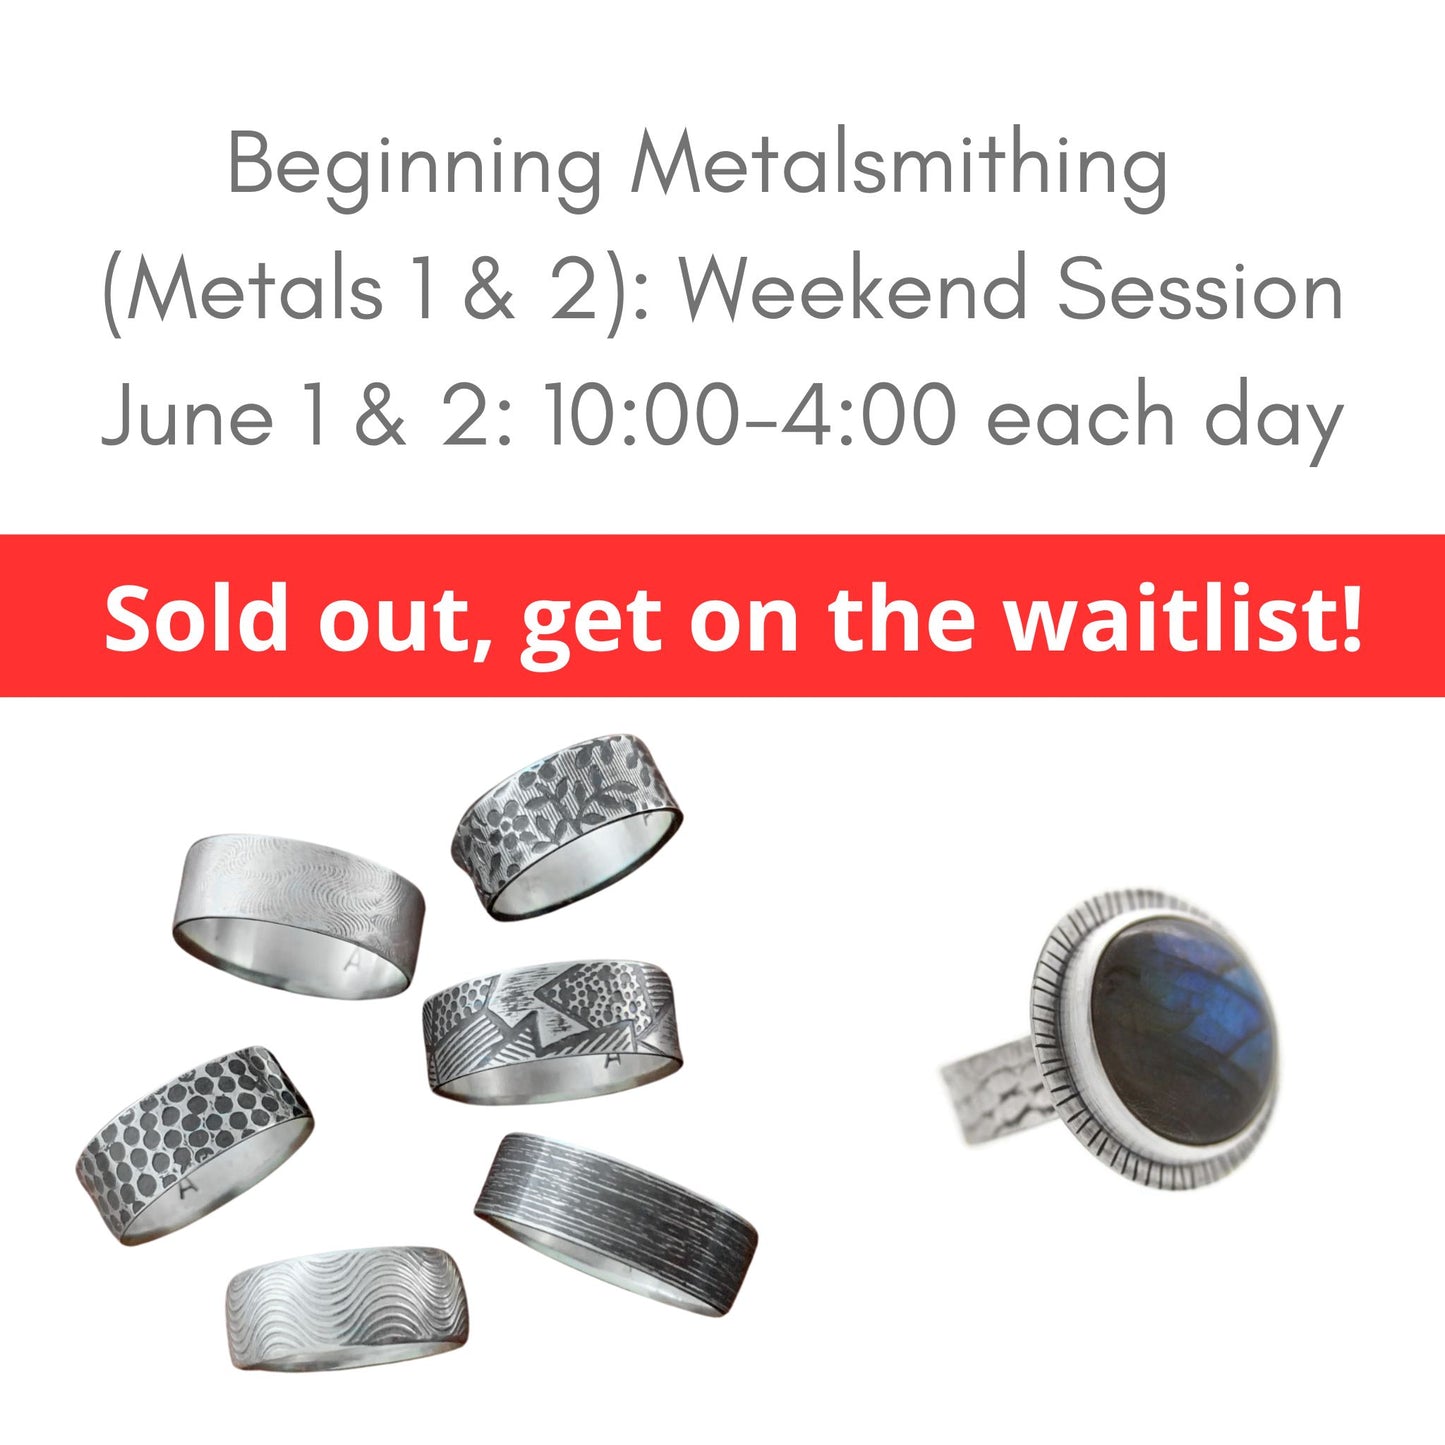 Beginning Metalsmithing June 1 and 2